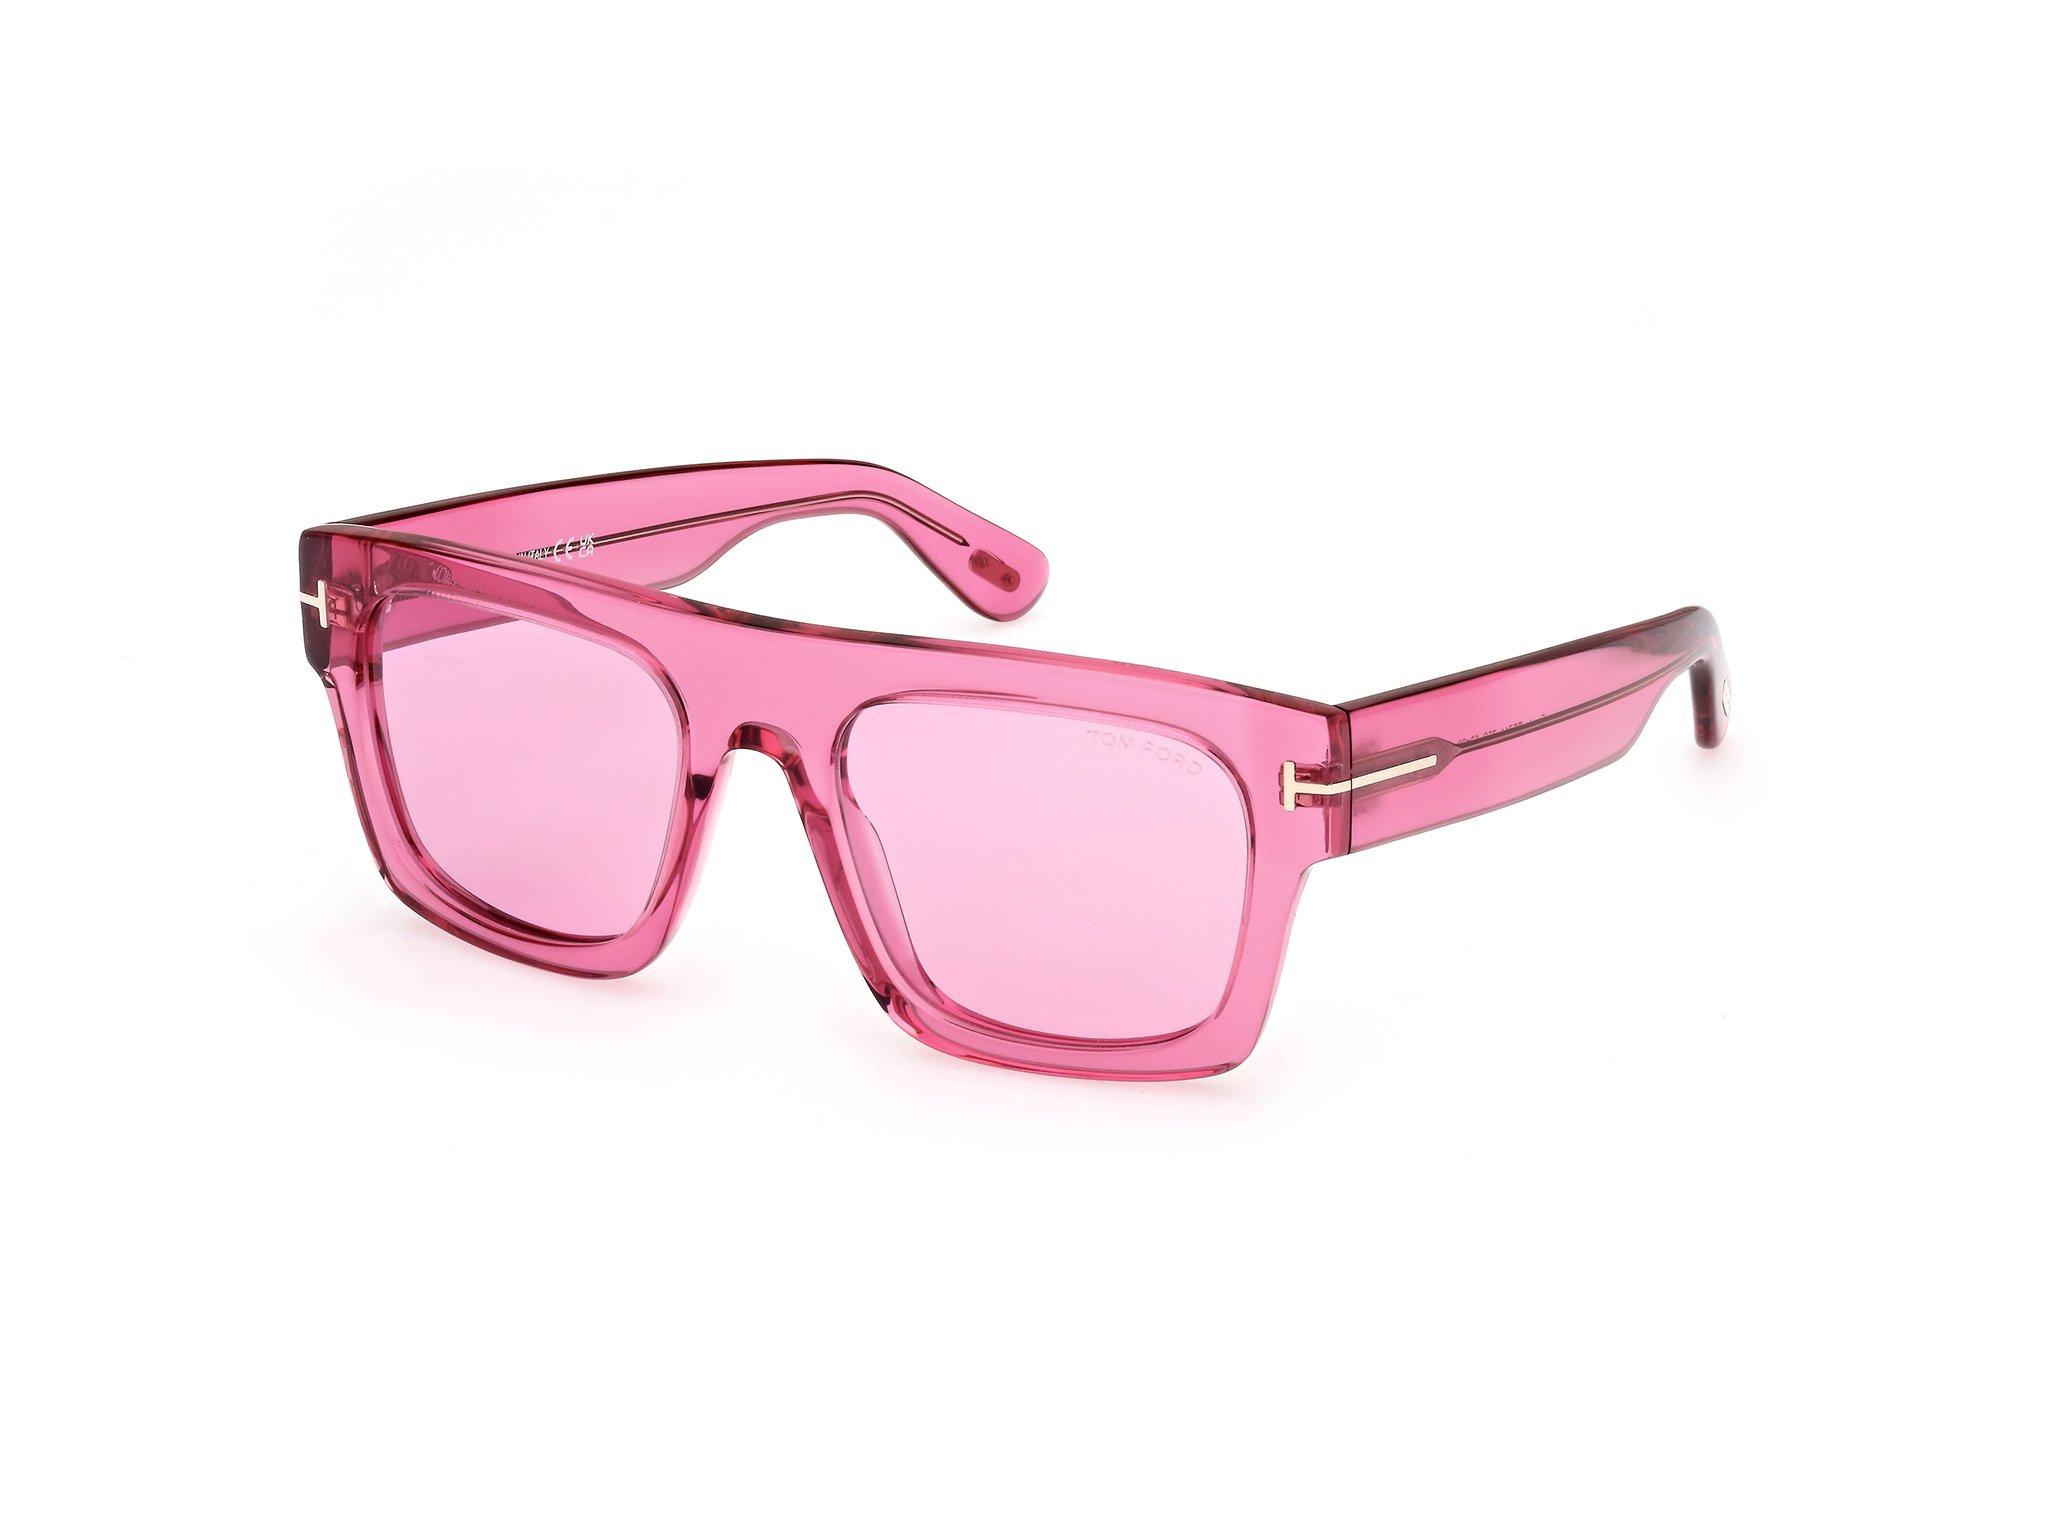 Das Bild zeigt die Sonnenbrille FT0711 75S von der Marke Tom Ford in rosa.